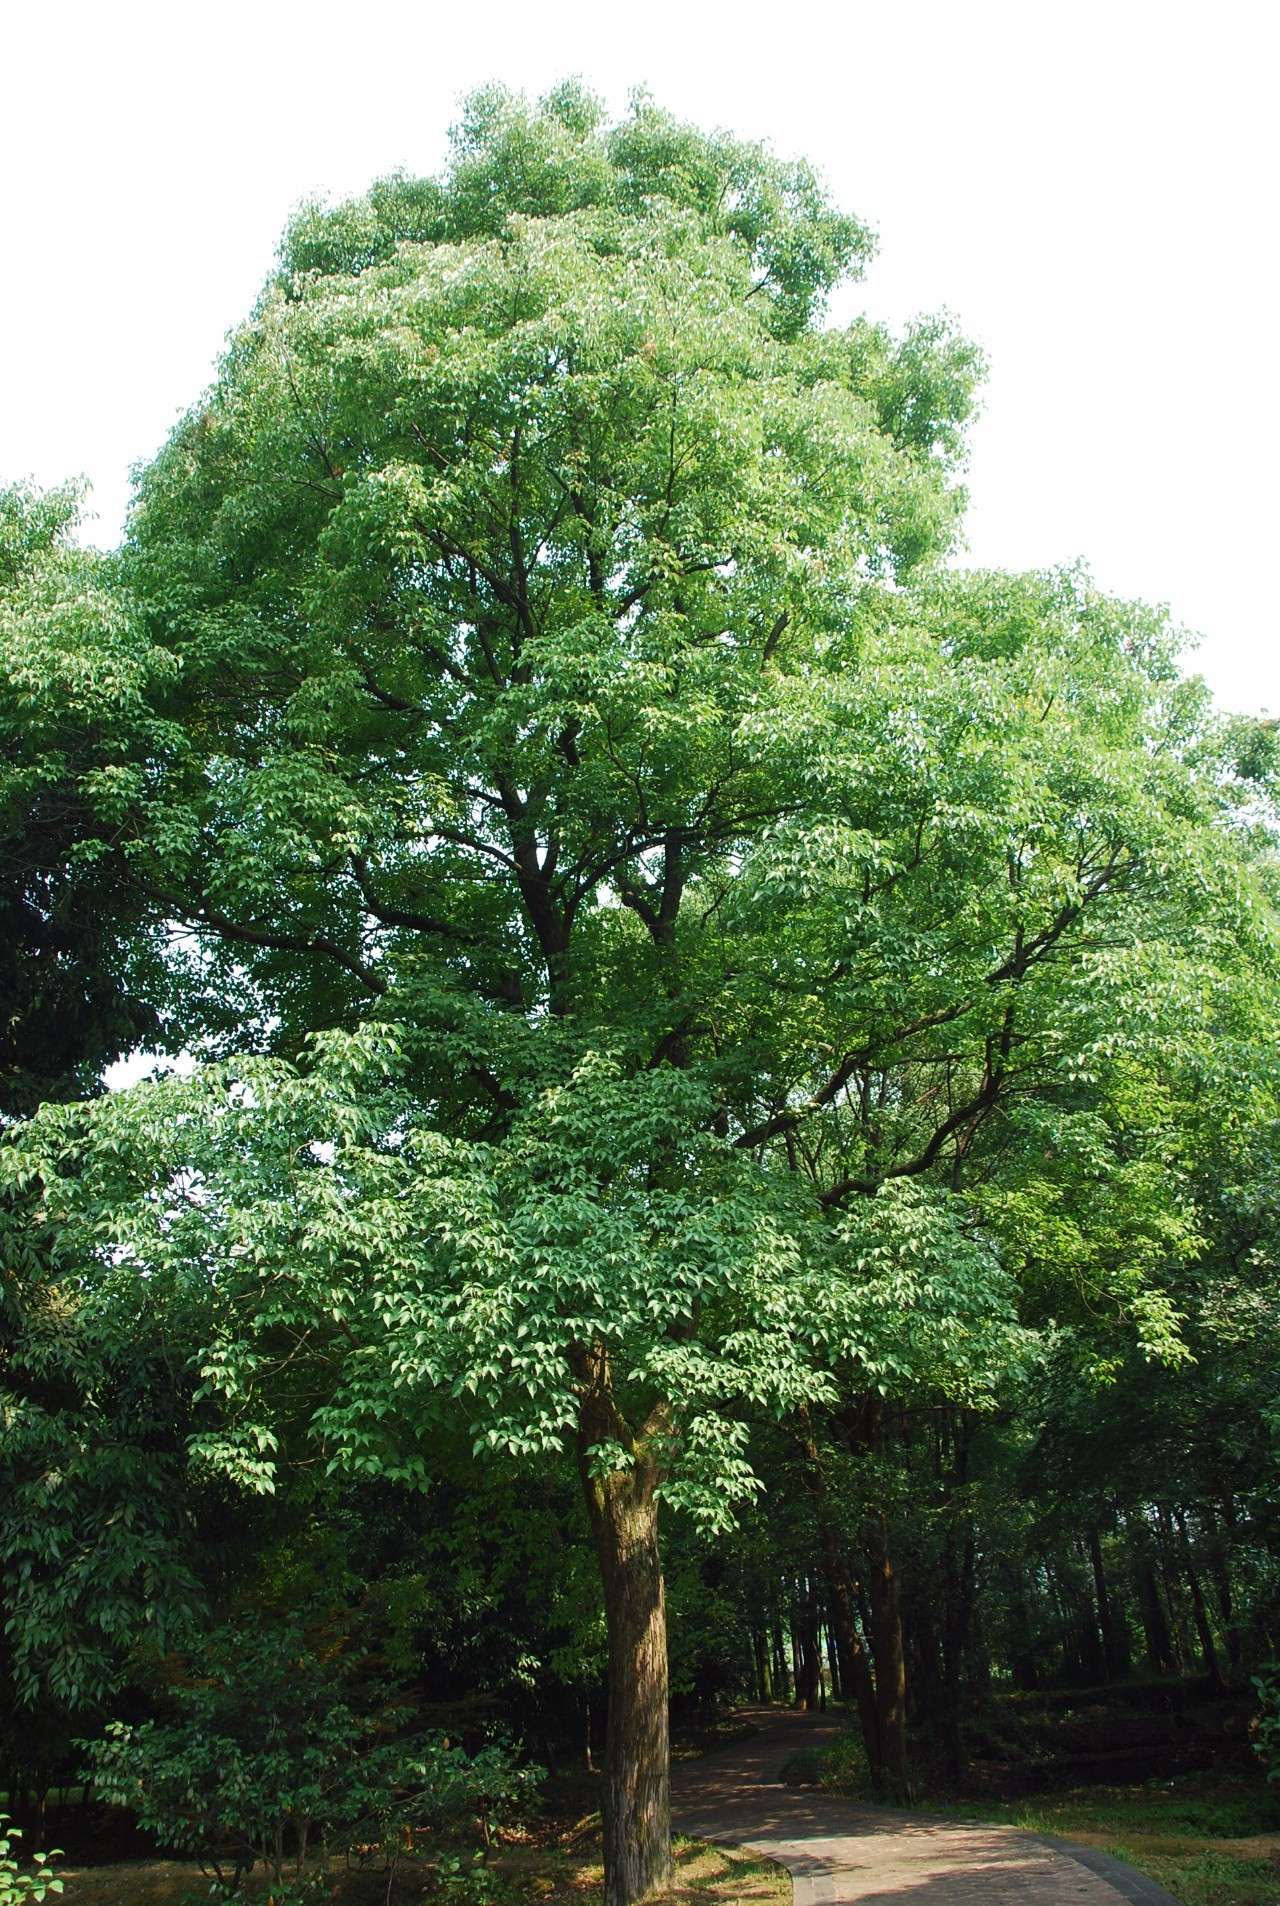 因此,古人登高时,在种植比较普遍的重阳木树下稍事停歇的可能性非常大